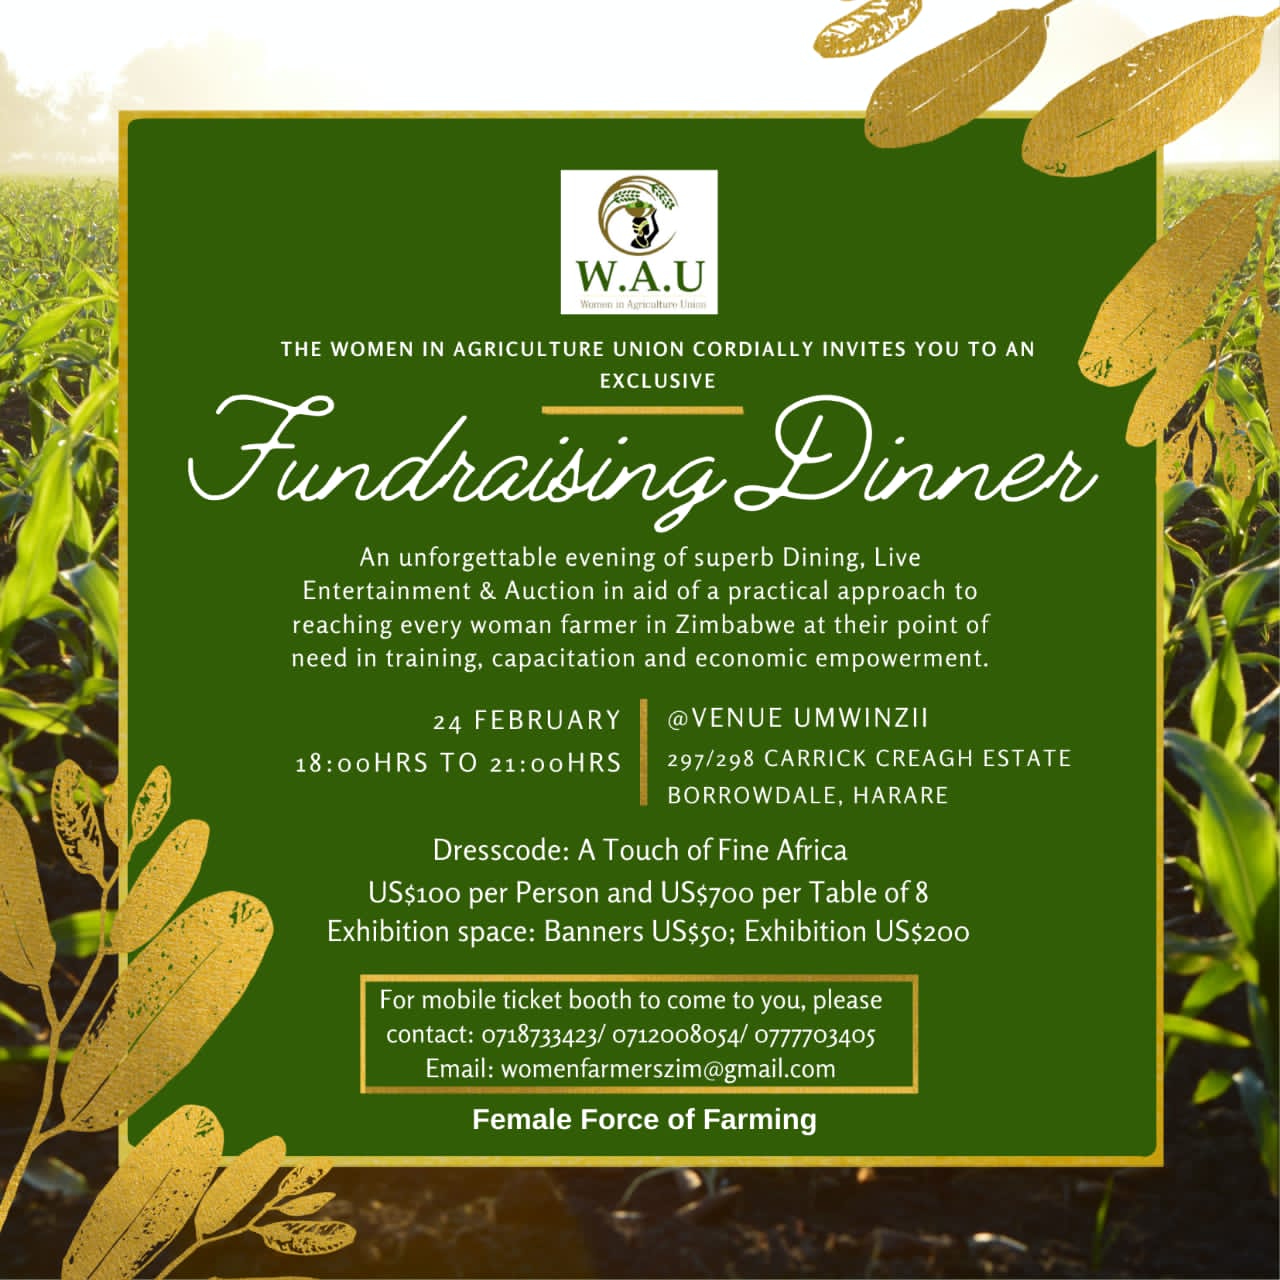 W.A.U Fundraising Dinner